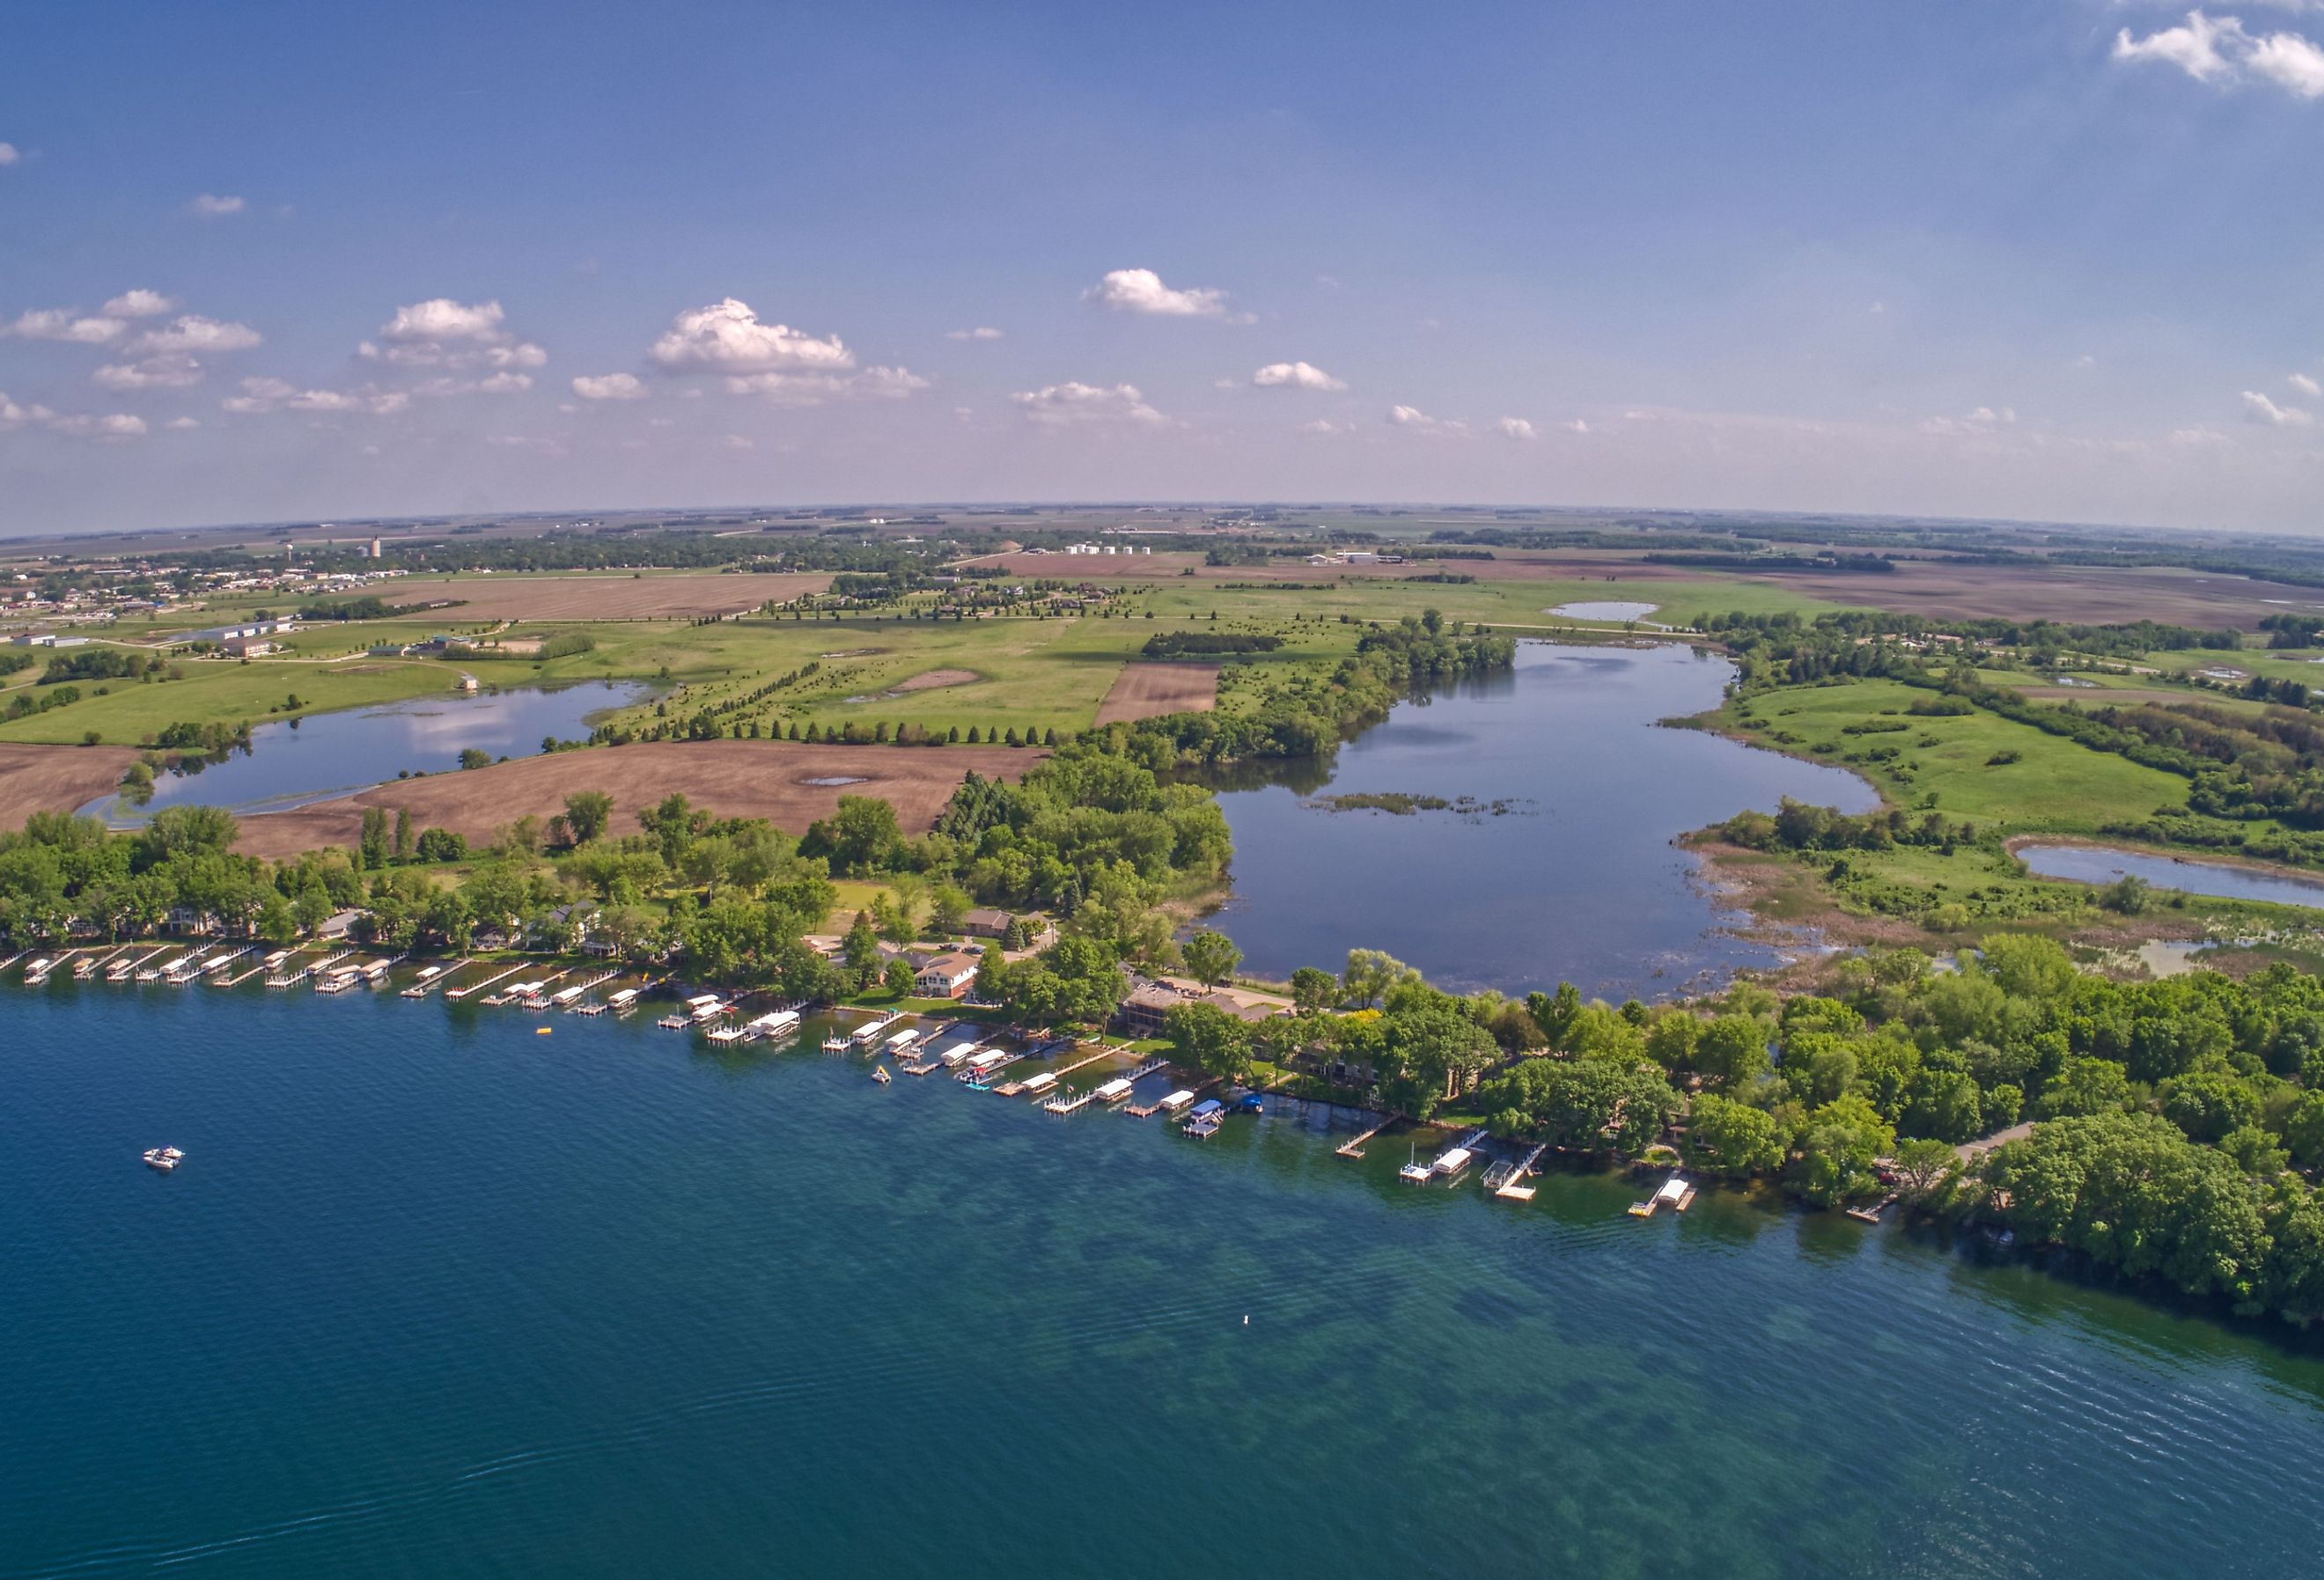 Lake Okoboji. Image credit Jacob Boomsma via Shutterstock